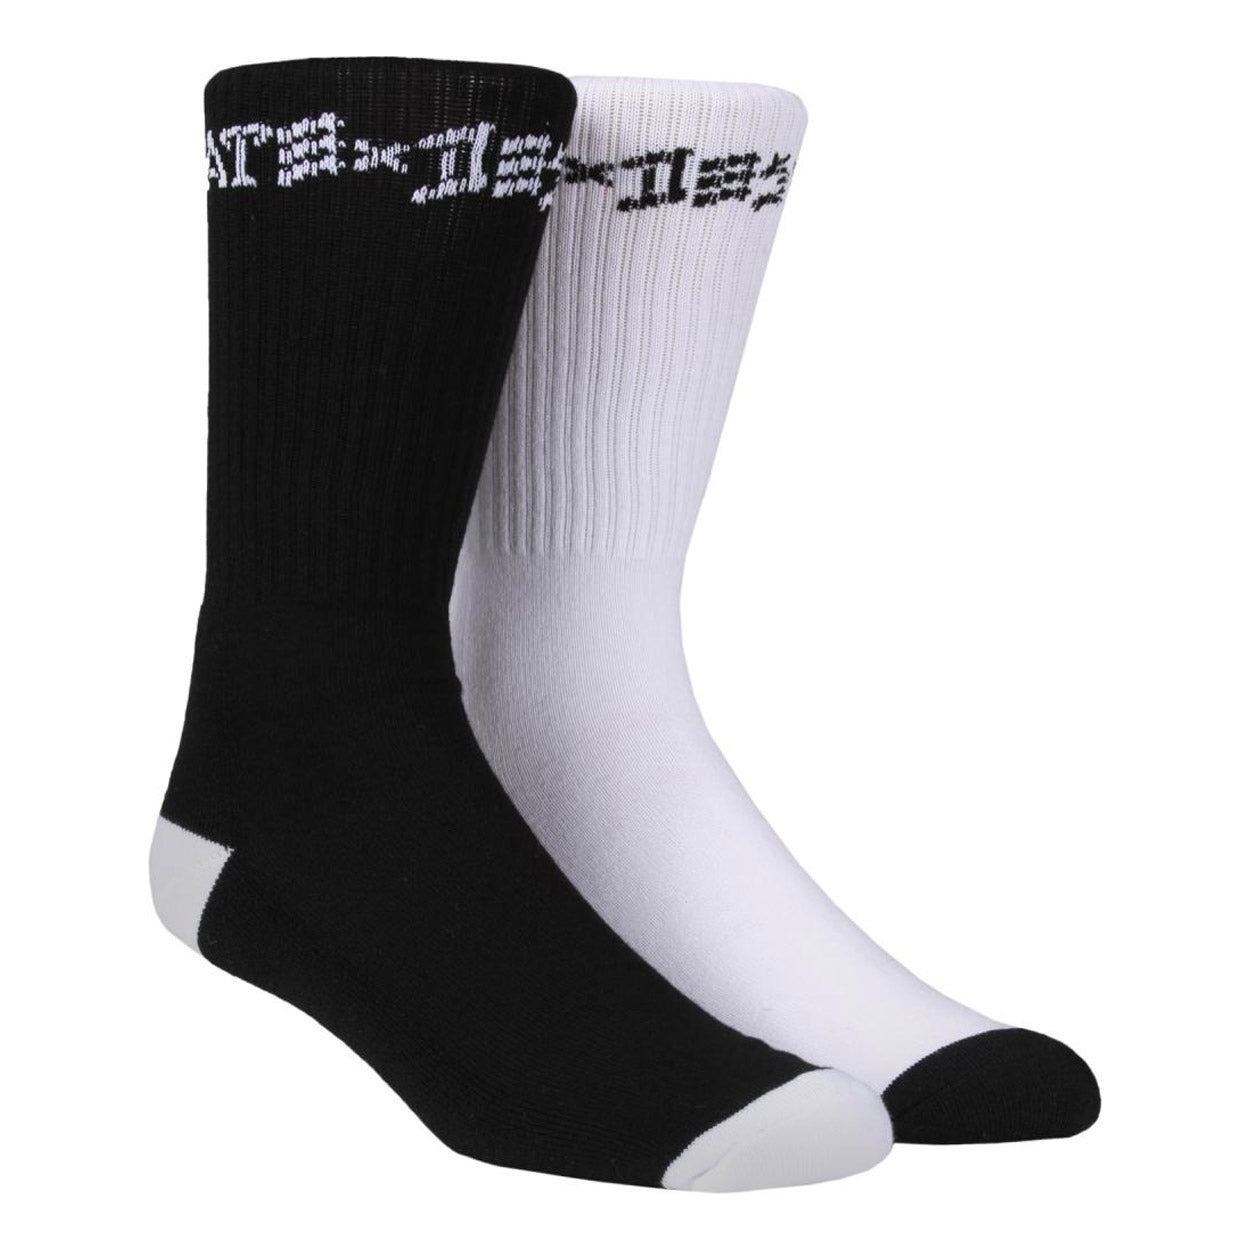 Thrasher Skate & Destroy (2 pack) Socks - Black / White - Prime Delux Store